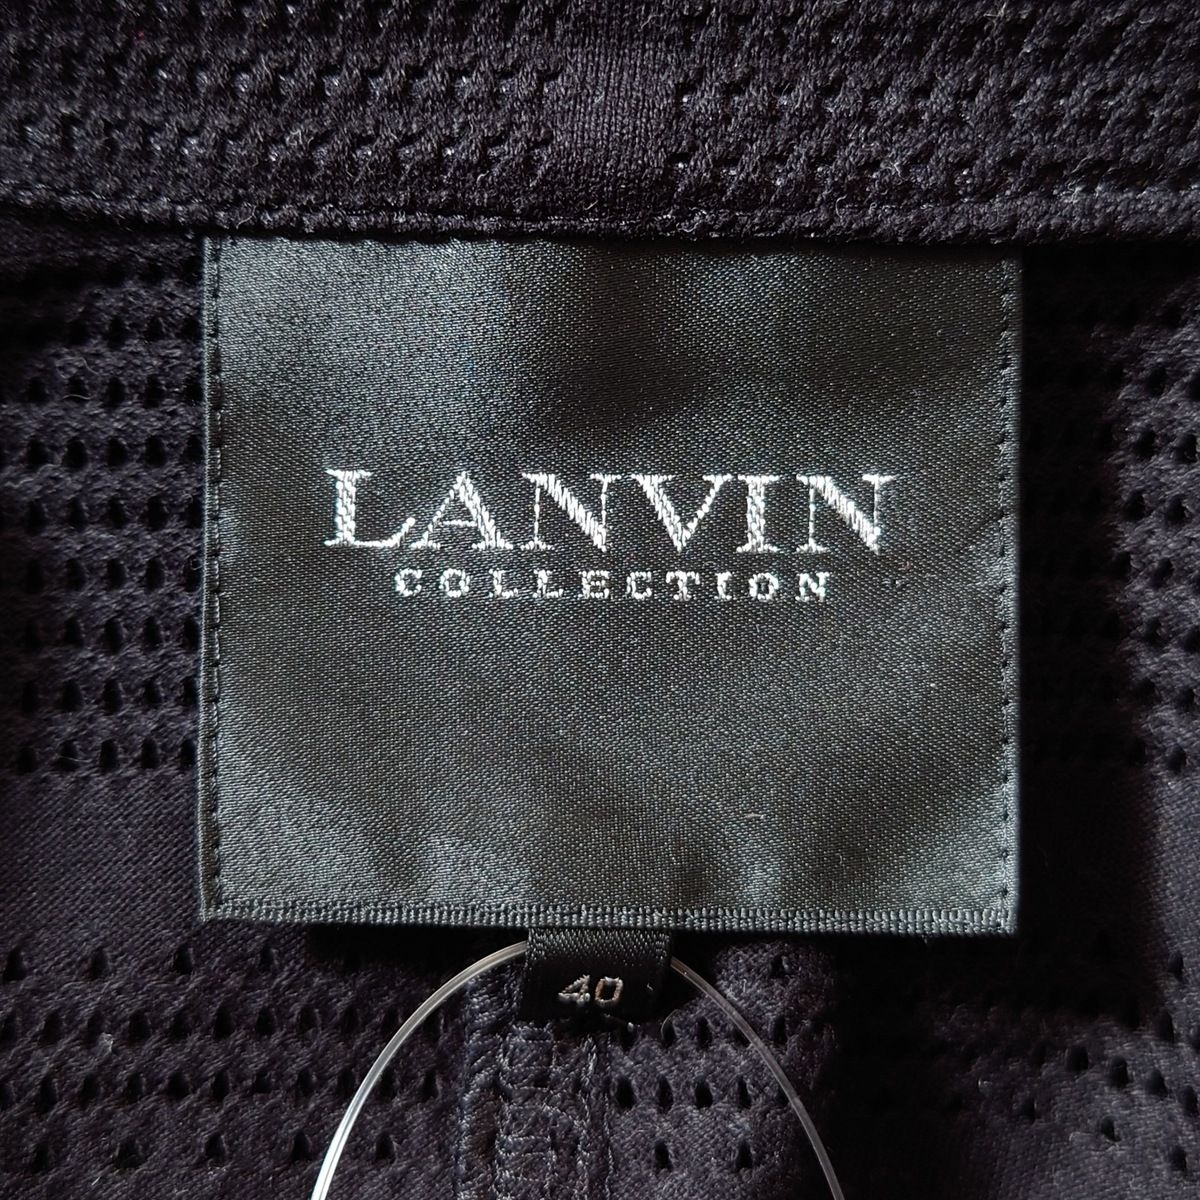 LANVIN COLLECTION(ランバンコレクション) ジャケット サイズ40 M